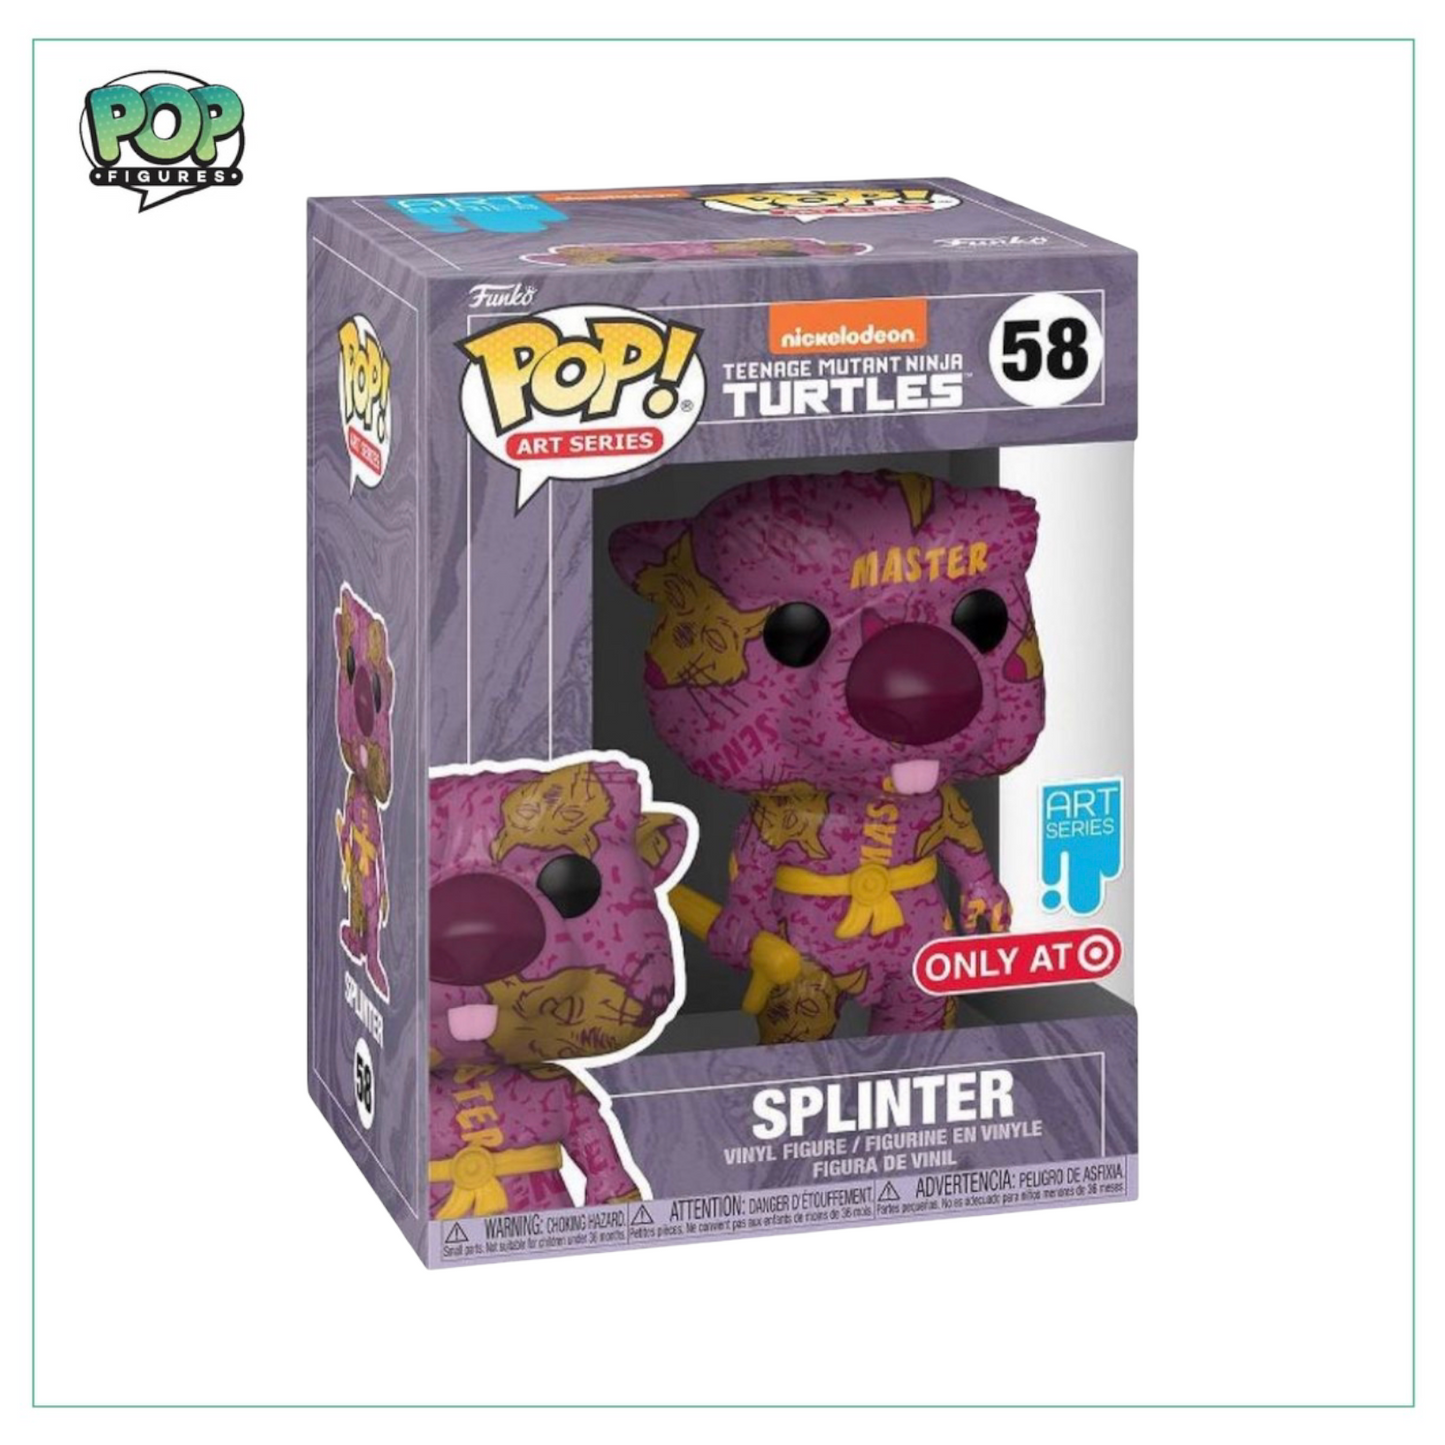 Splinter (Artist Series) #58  Funko Pop! Teenage Mutant Ninja Turtles - Target Exclusive - Angry Cat